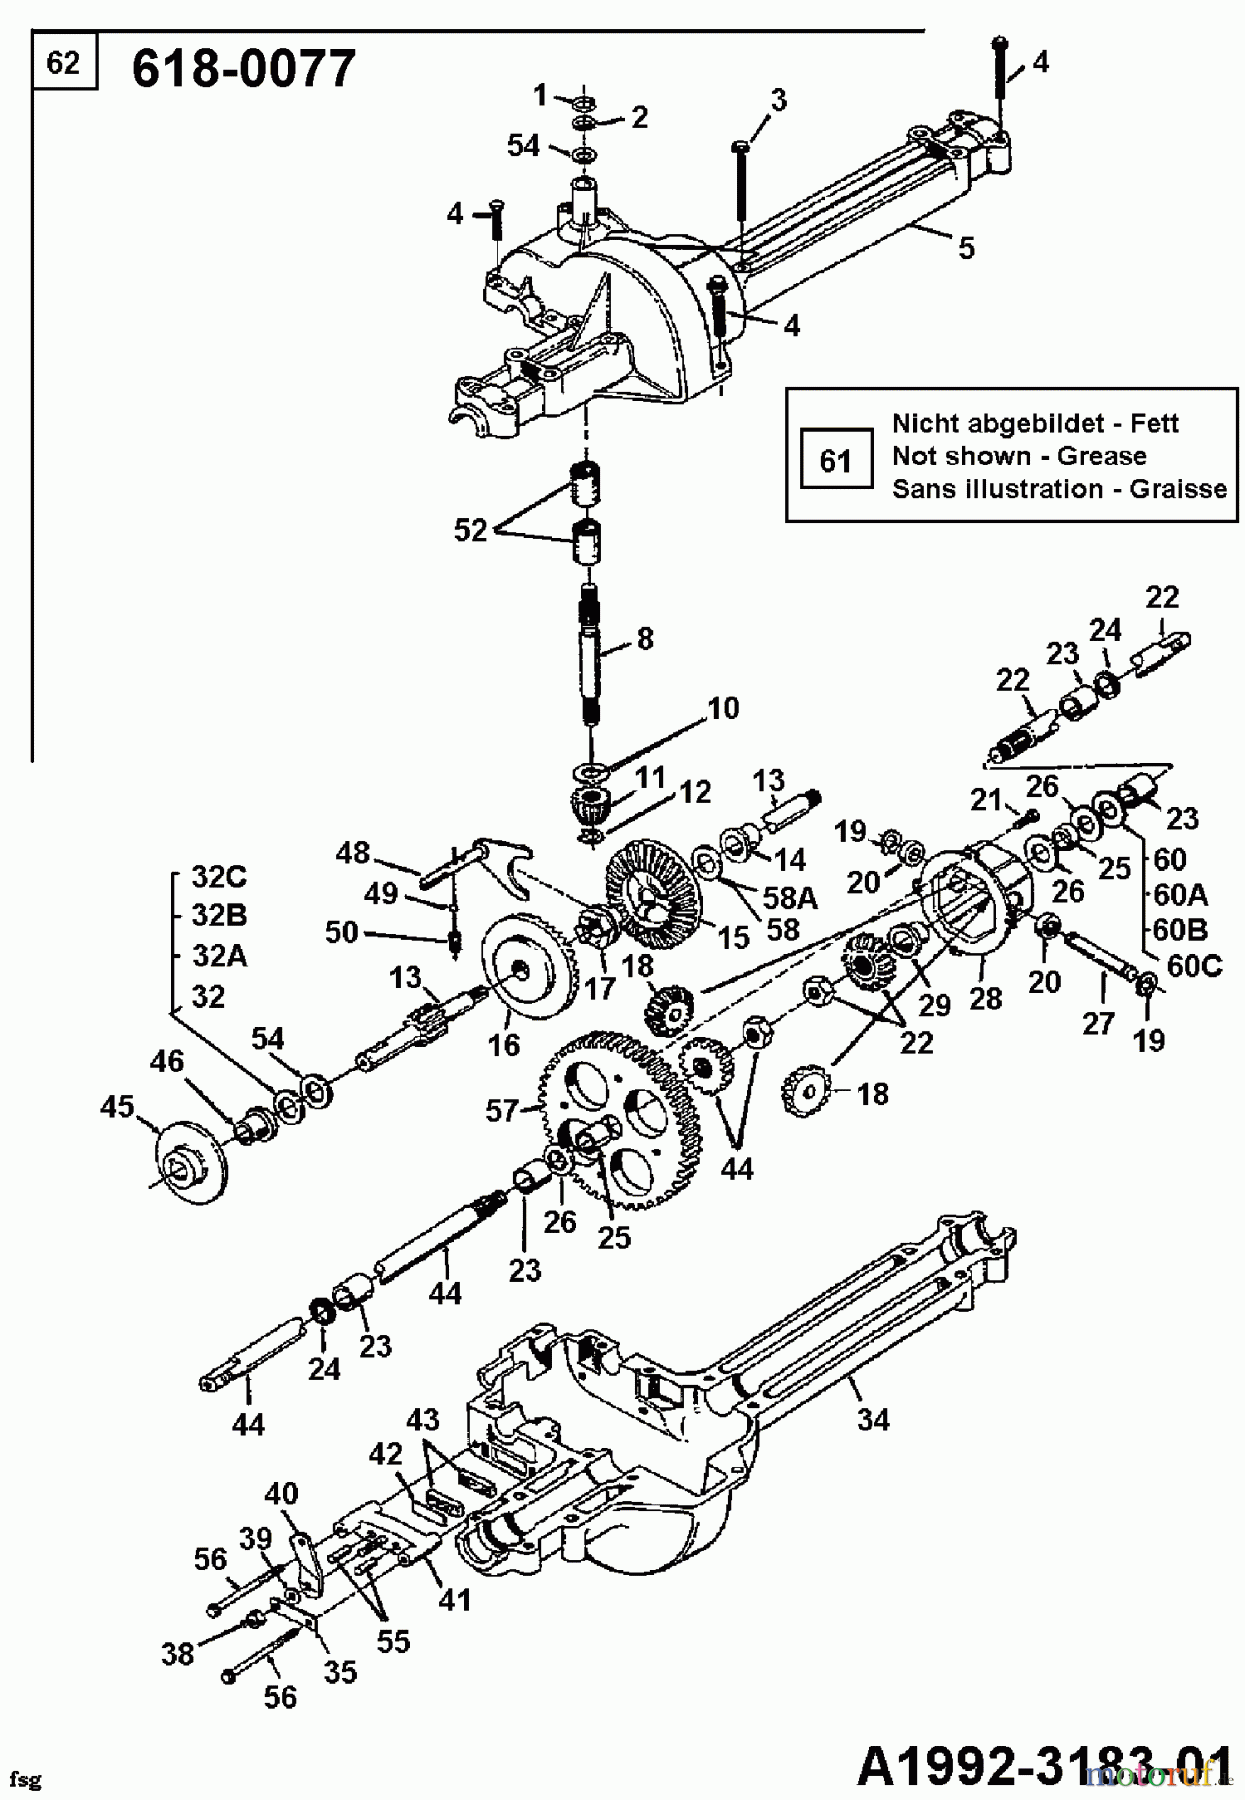  Mastercut Lawn tractors 12/91 133I470E657  (1993) Gearbox 618-0077